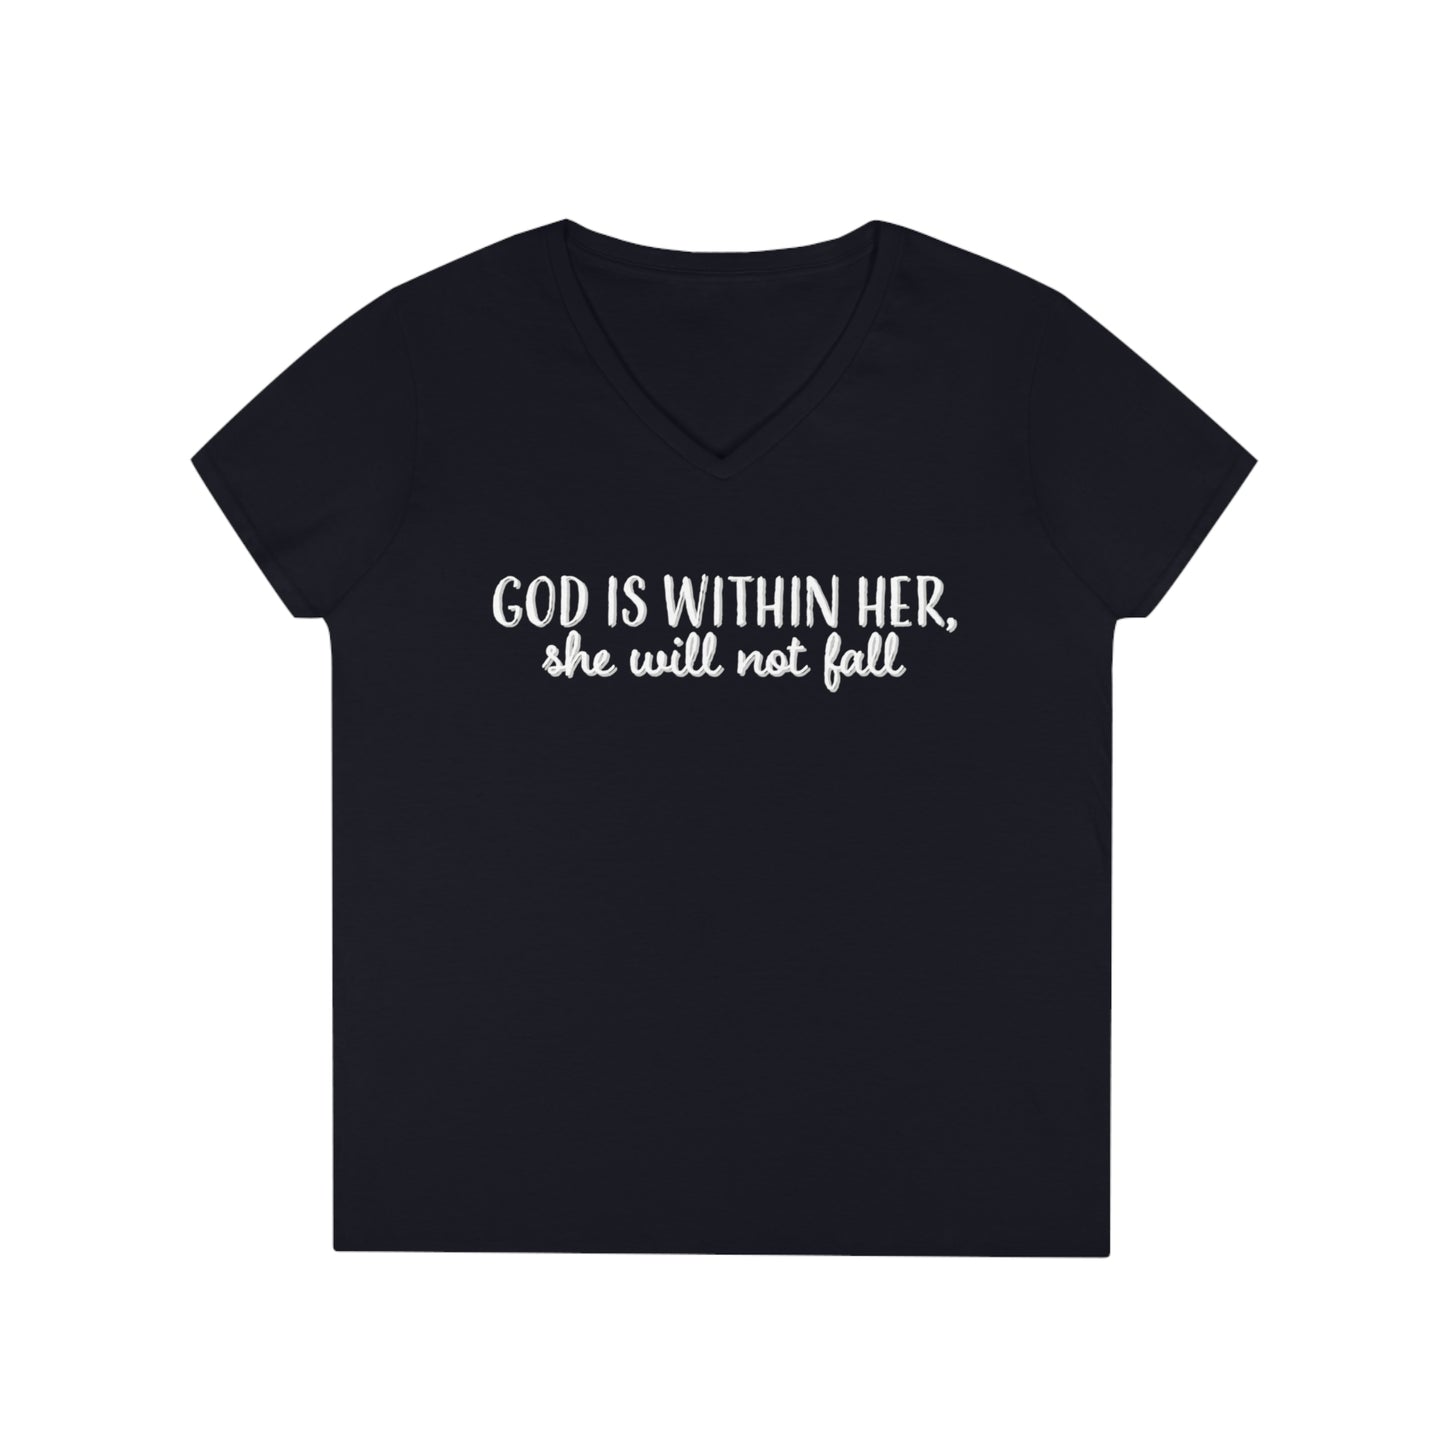 Ladies' V-Neck T-Shirt, Bible Verse Shirt, Trendy Christian Shirt